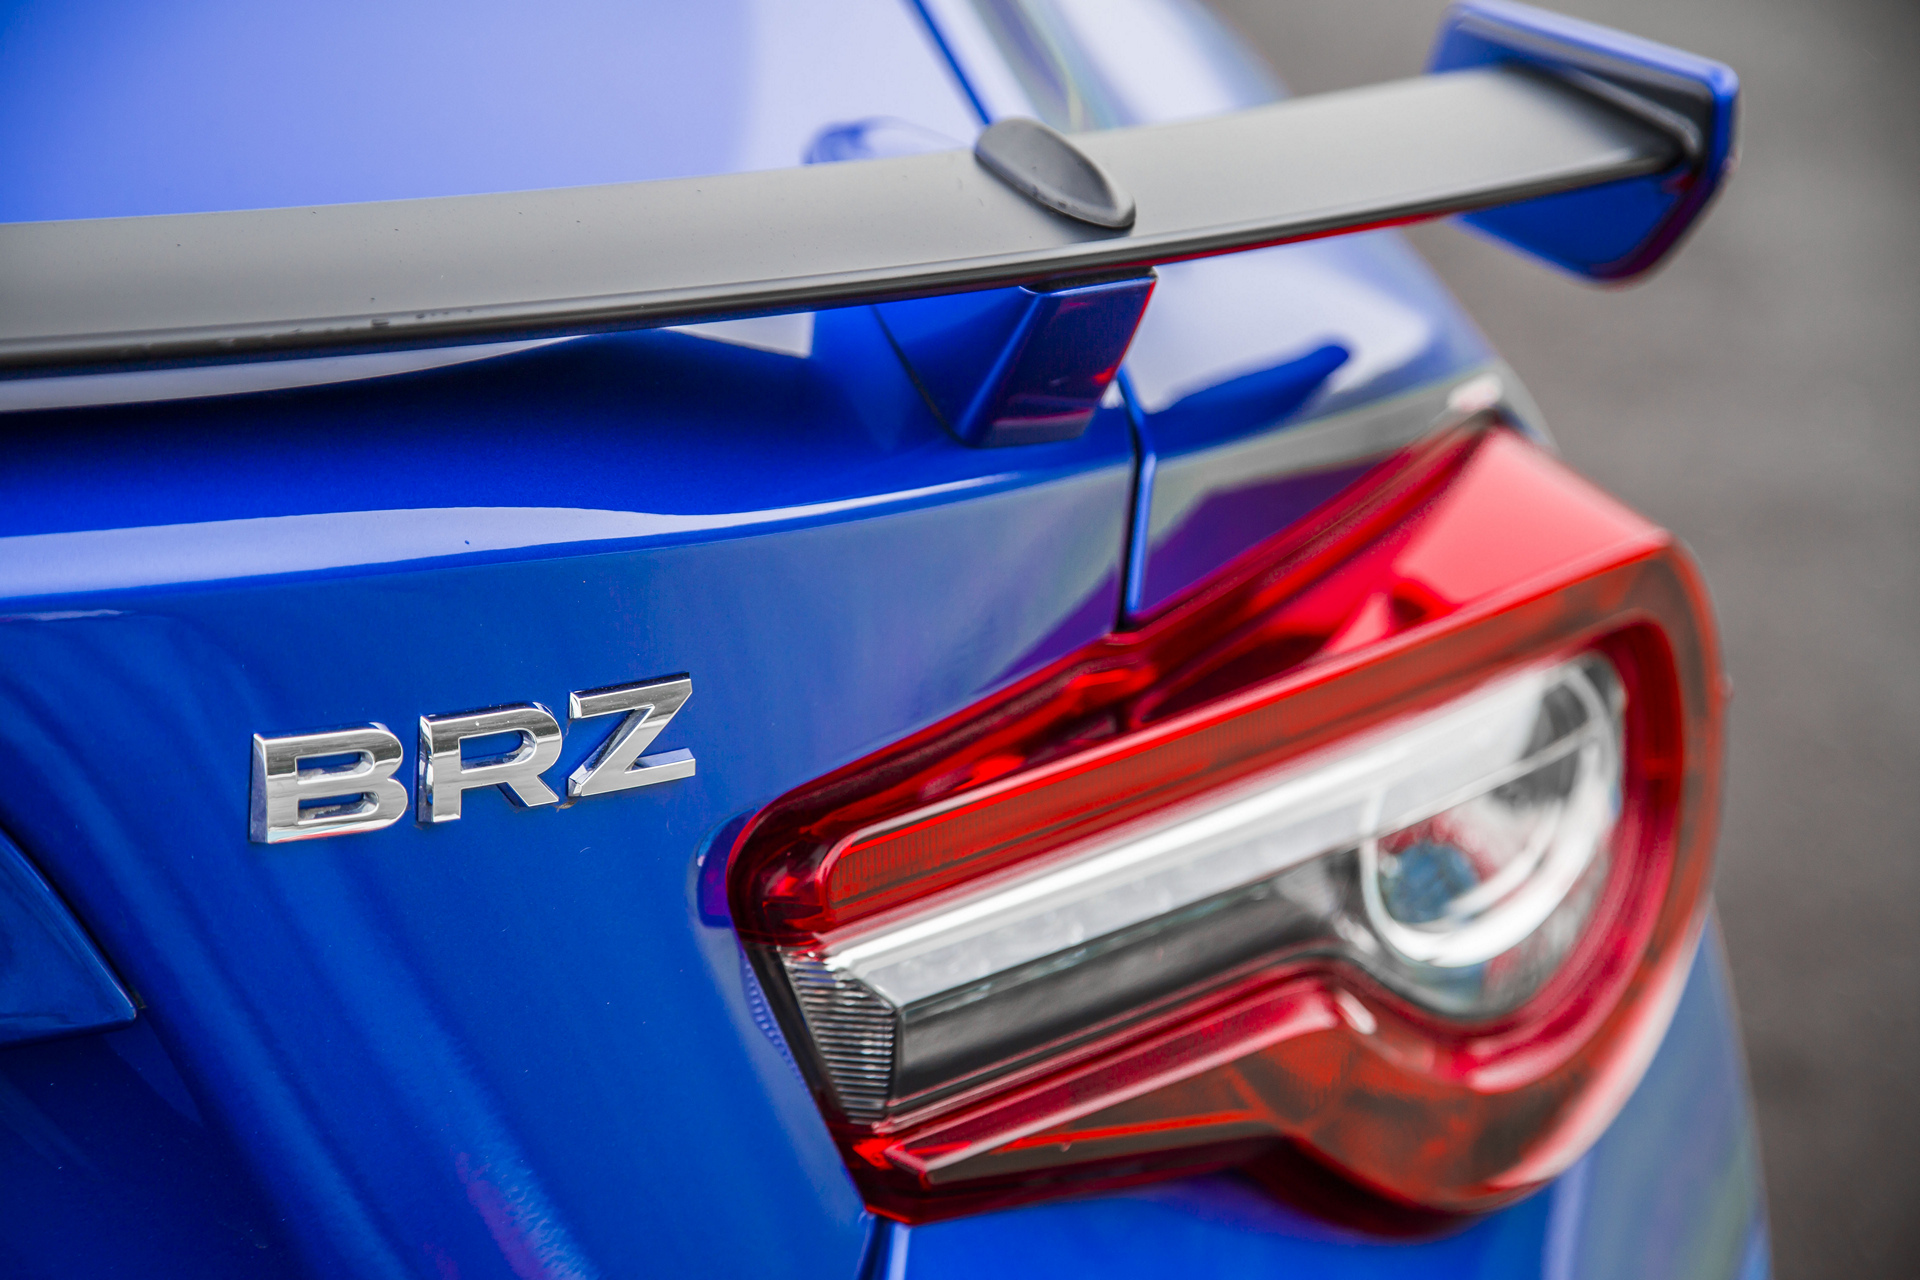 2017 Subaru BRZ ©Fuji Heavy Industries, Ltd.